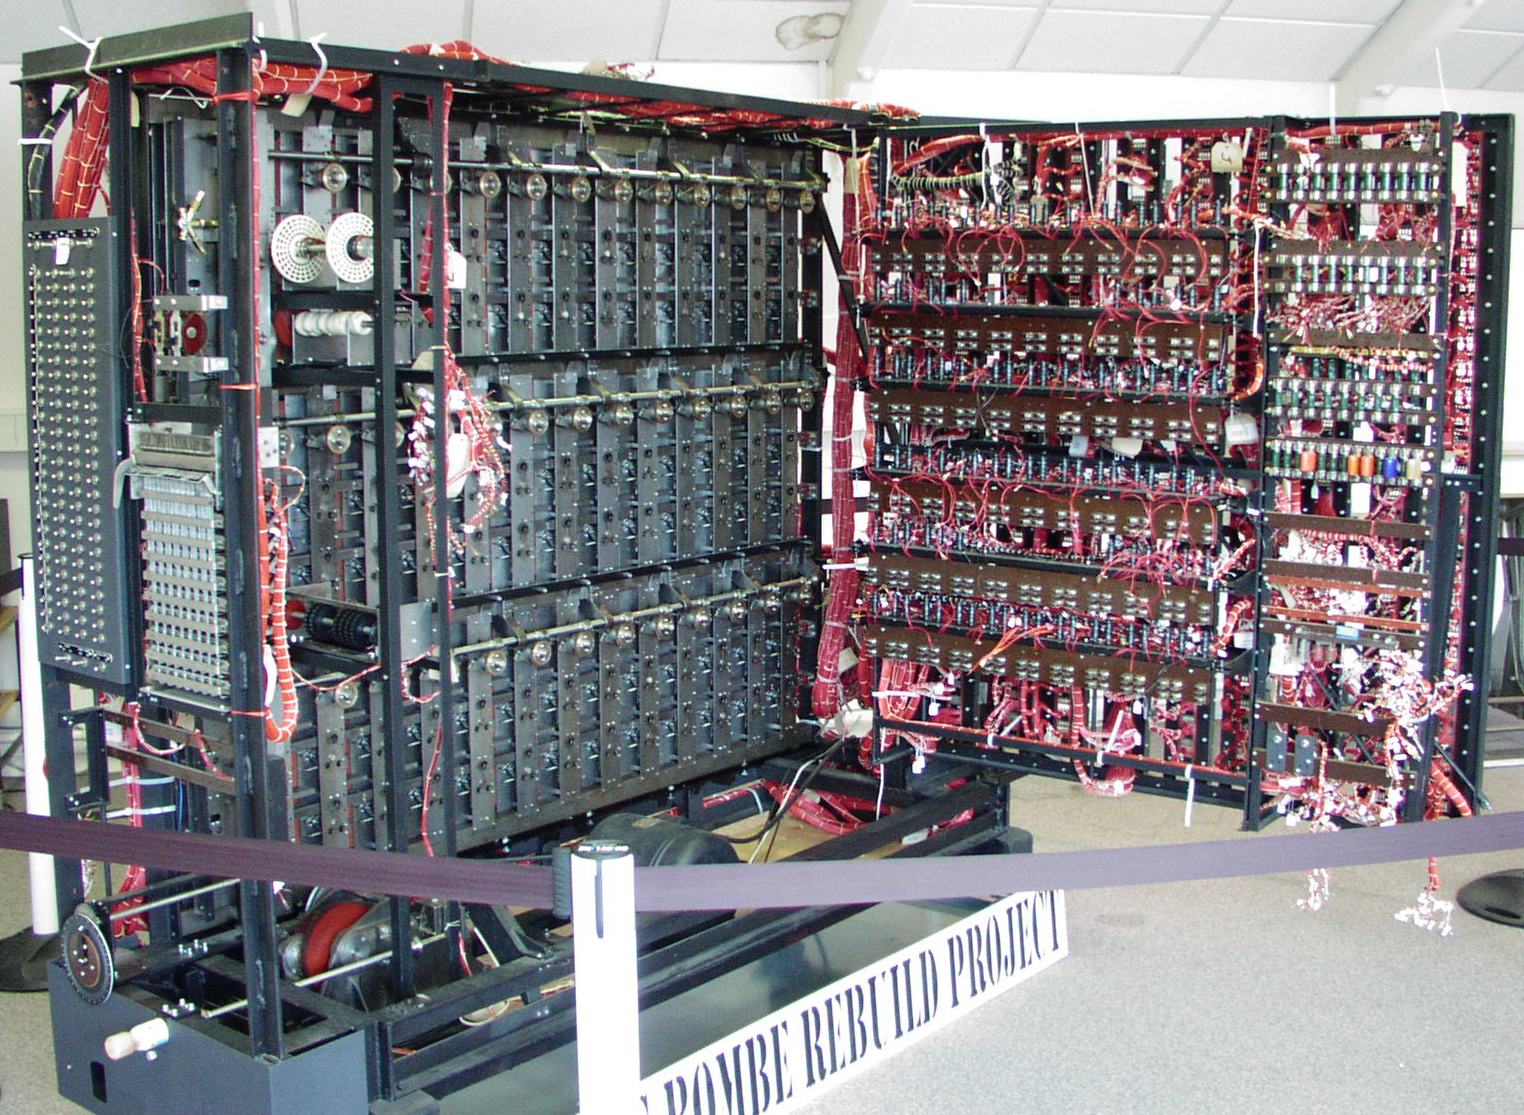  ombyggnad av Alan Turings kodbrytande dator, Bombe